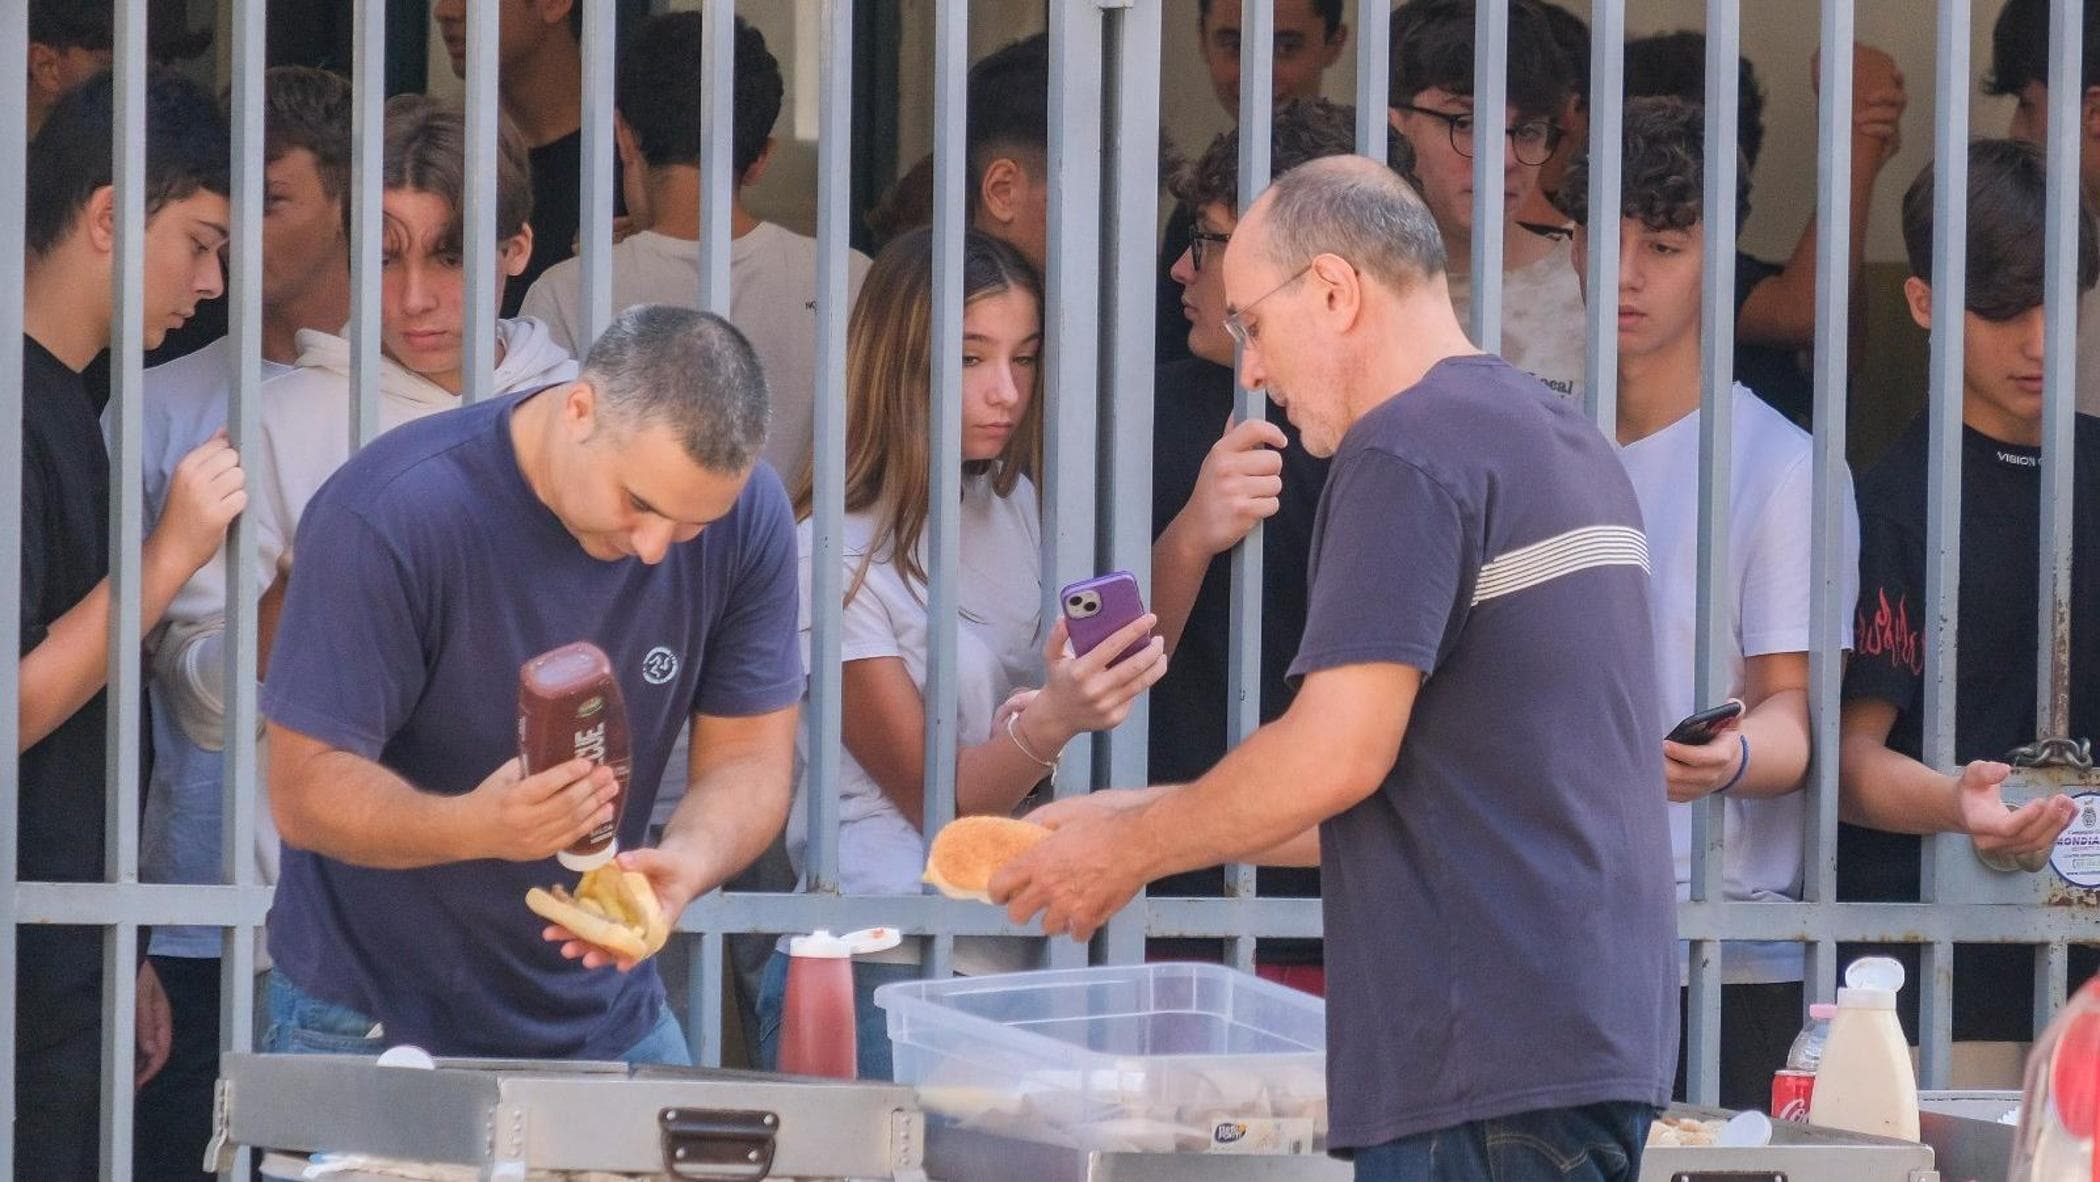 Scioperi nei licei di Palermo contro limiti alla liberta dei